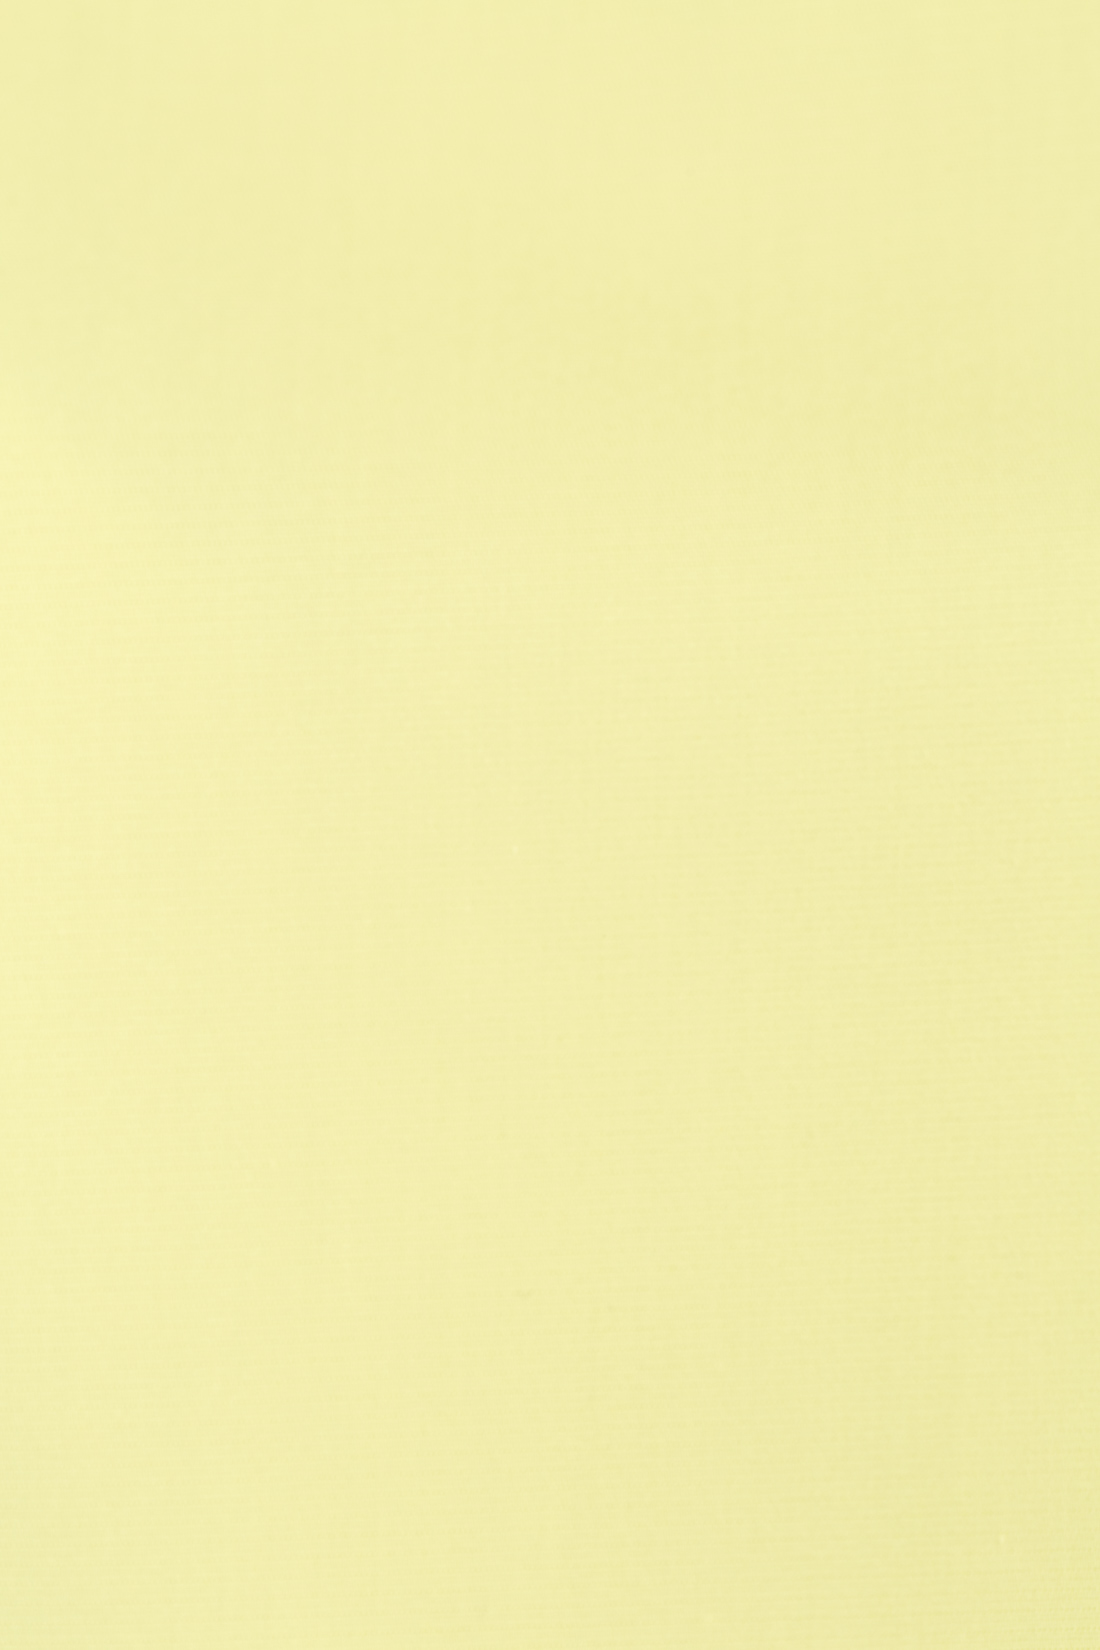 Платье с рукавами-воланами (арт. baon B457043), размер L, цвет желтый Платье с рукавами-воланами (арт. baon B457043) - фото 4